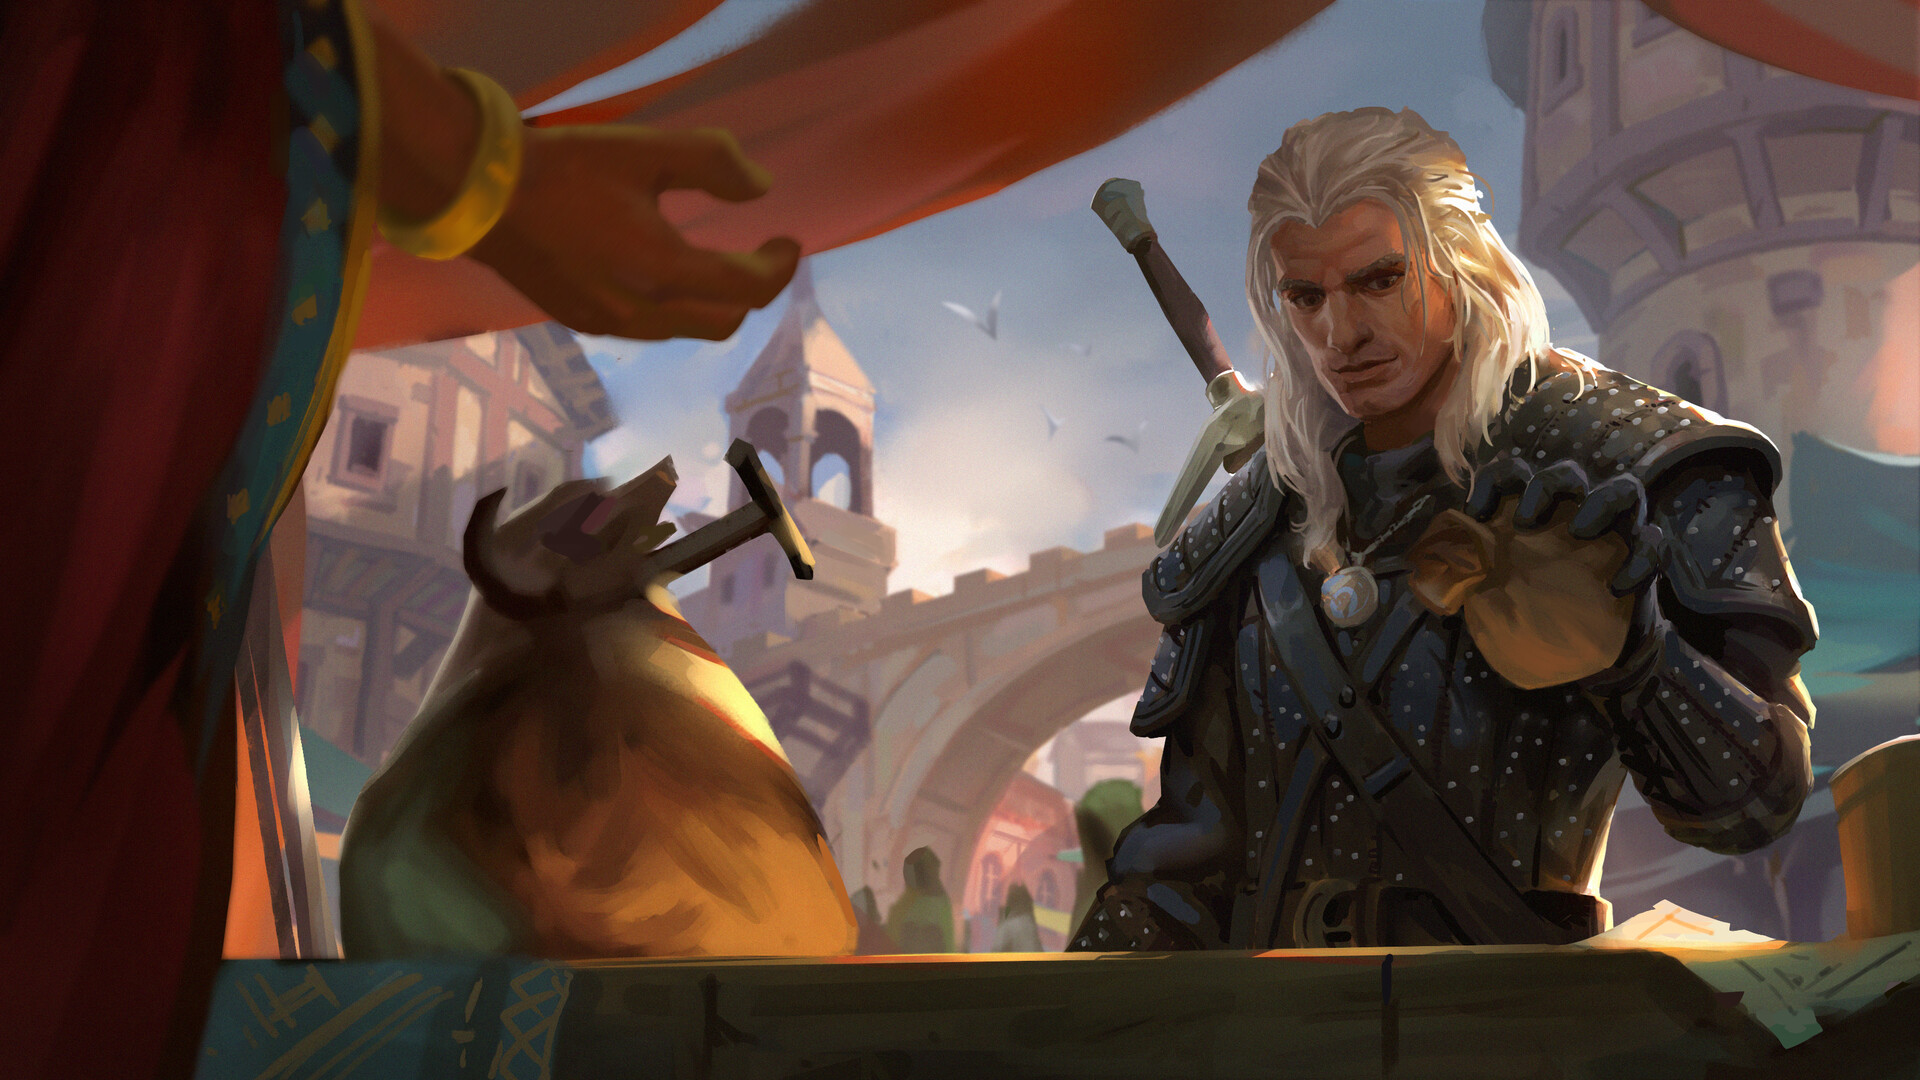 Descarga gratuita de fondo de pantalla para móvil de Series De Televisión, Geralt De Rivia, The Witcher.